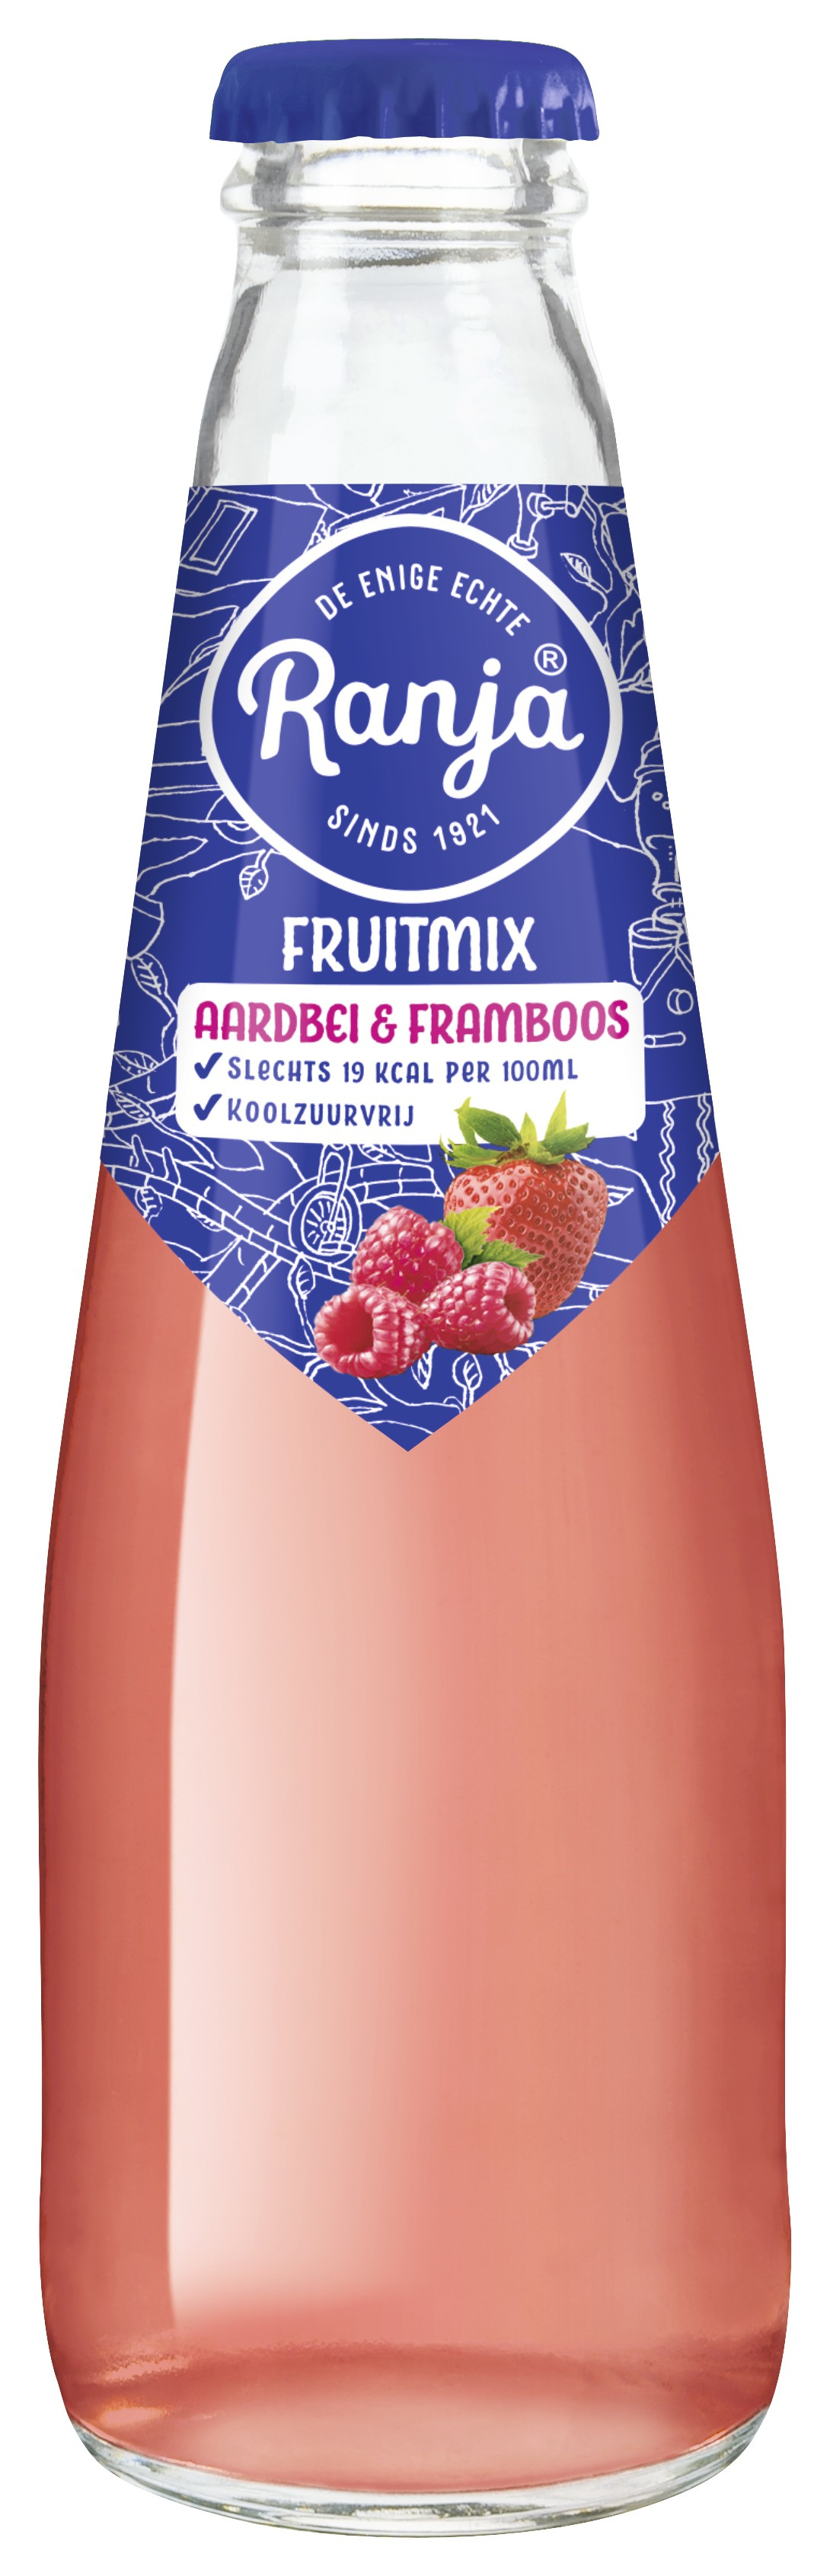 Ranja Fruitmix Aardbei & Framboos Krat 28x20 cl